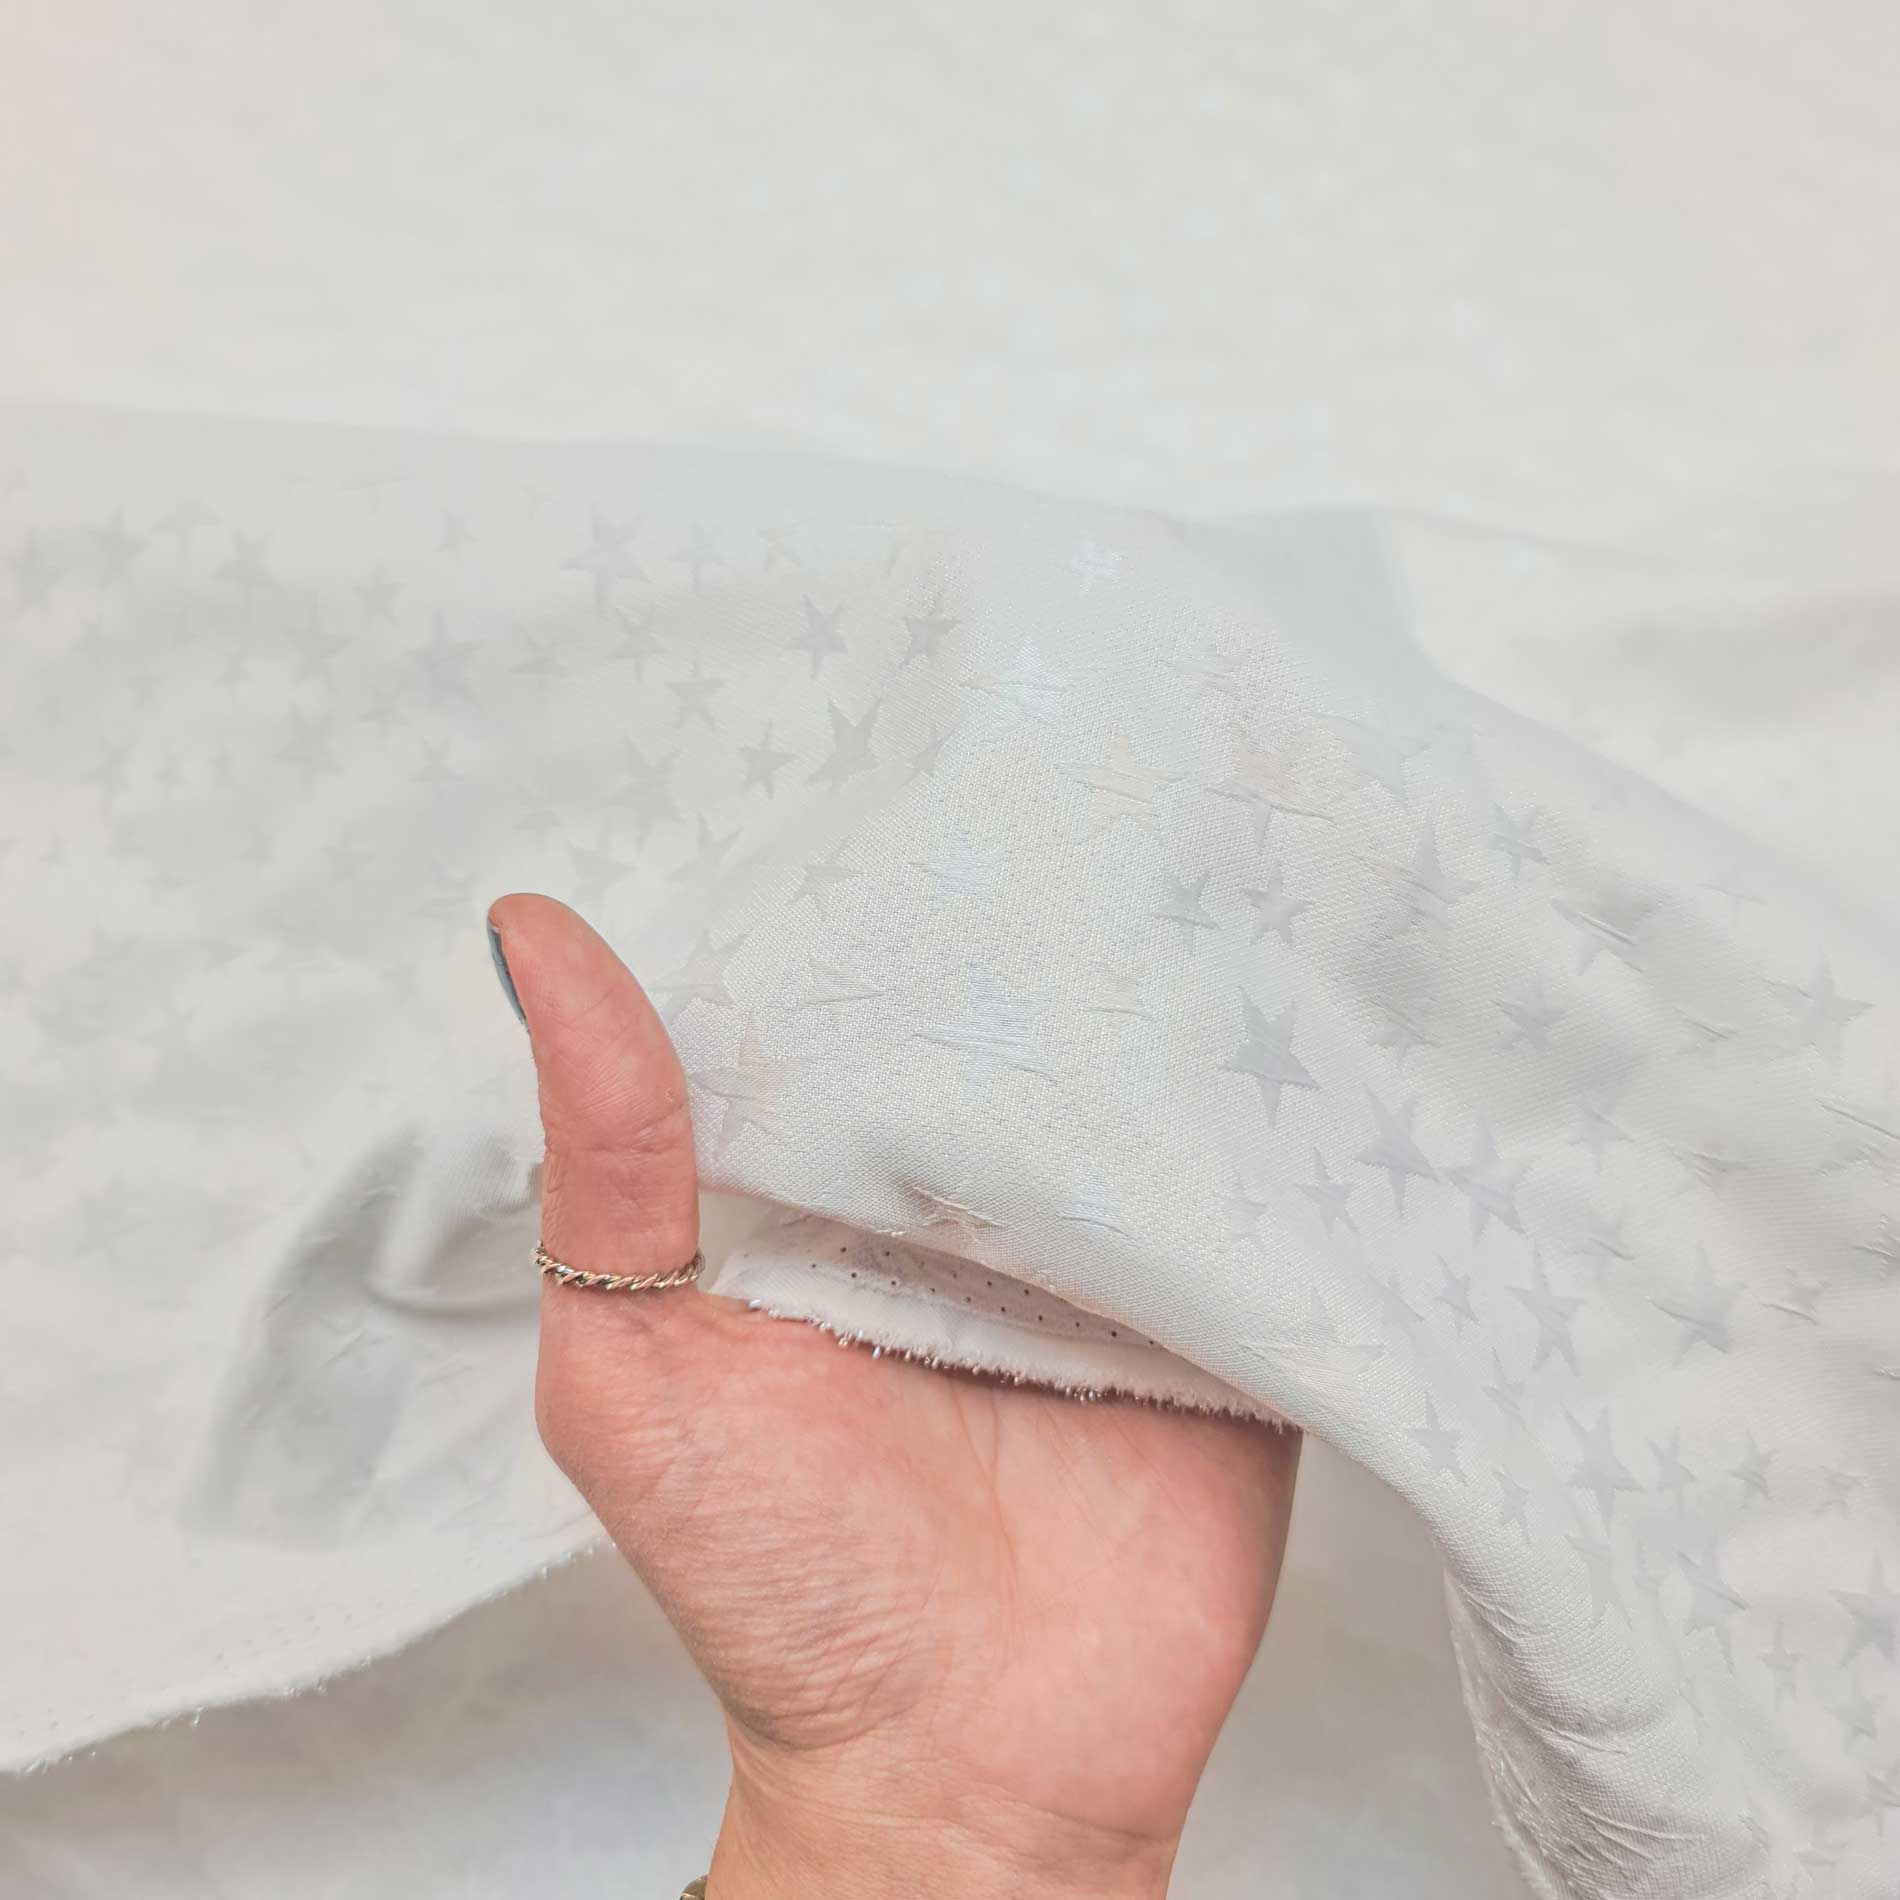 پارچه ژاکارد سیملی مینوس رنگ ستاره ای سفید 